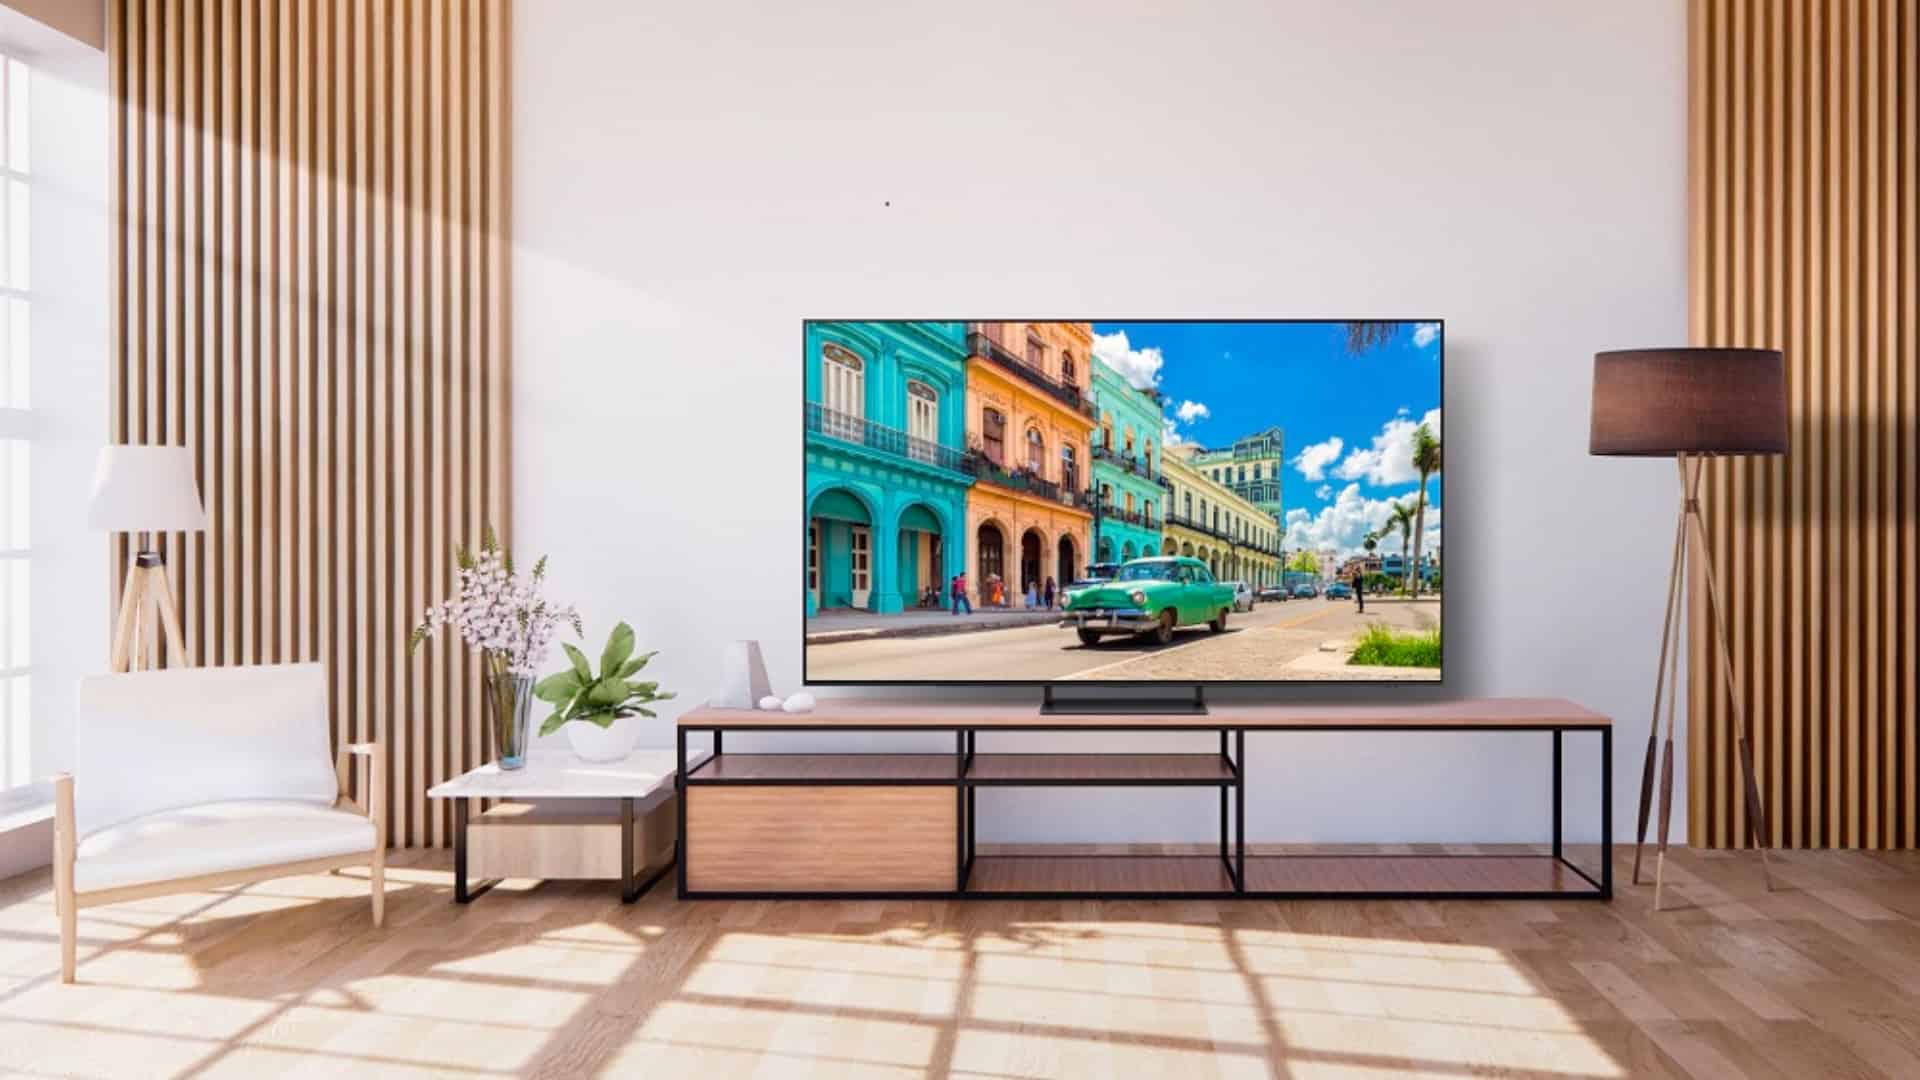 Samsung lança sua nova linha de TVs no Brasil para 2023, incluindo a primeira OLED e uma Neo QLED 8K